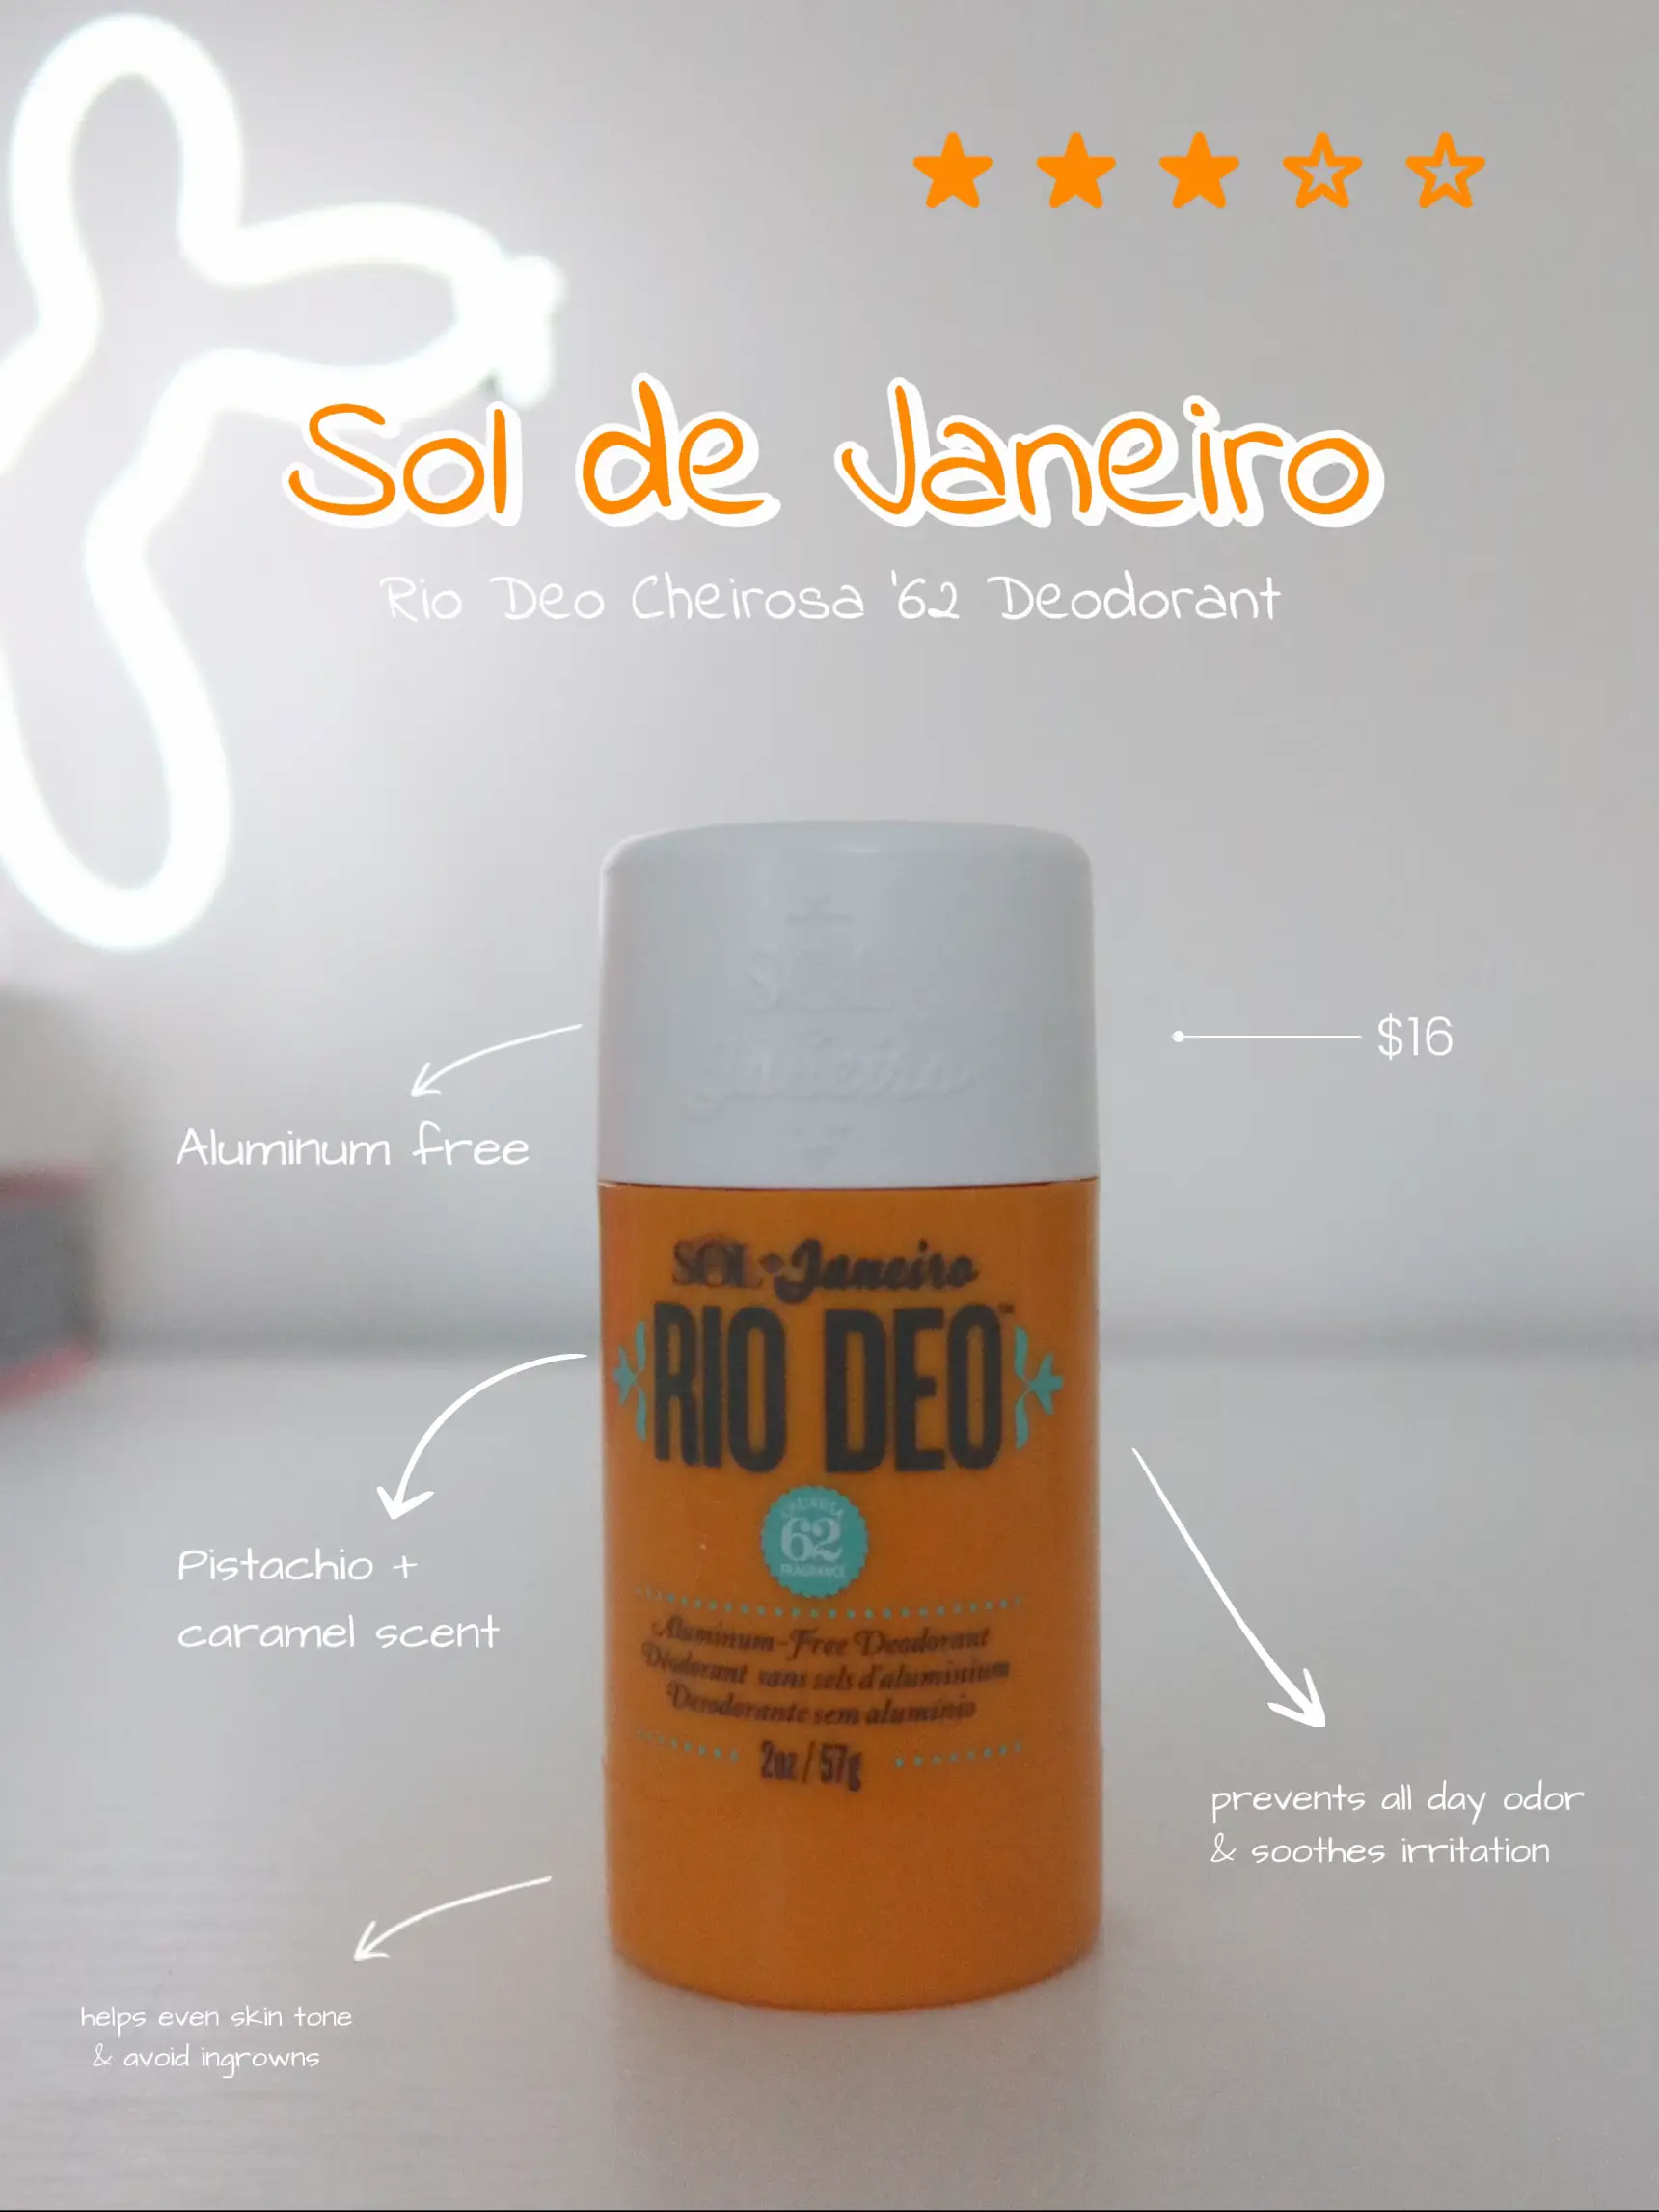 Sol de Janeiro Rio Deo Cheirosa 62 Aluminium-Free Deodorant 57g, Free US  Shipping